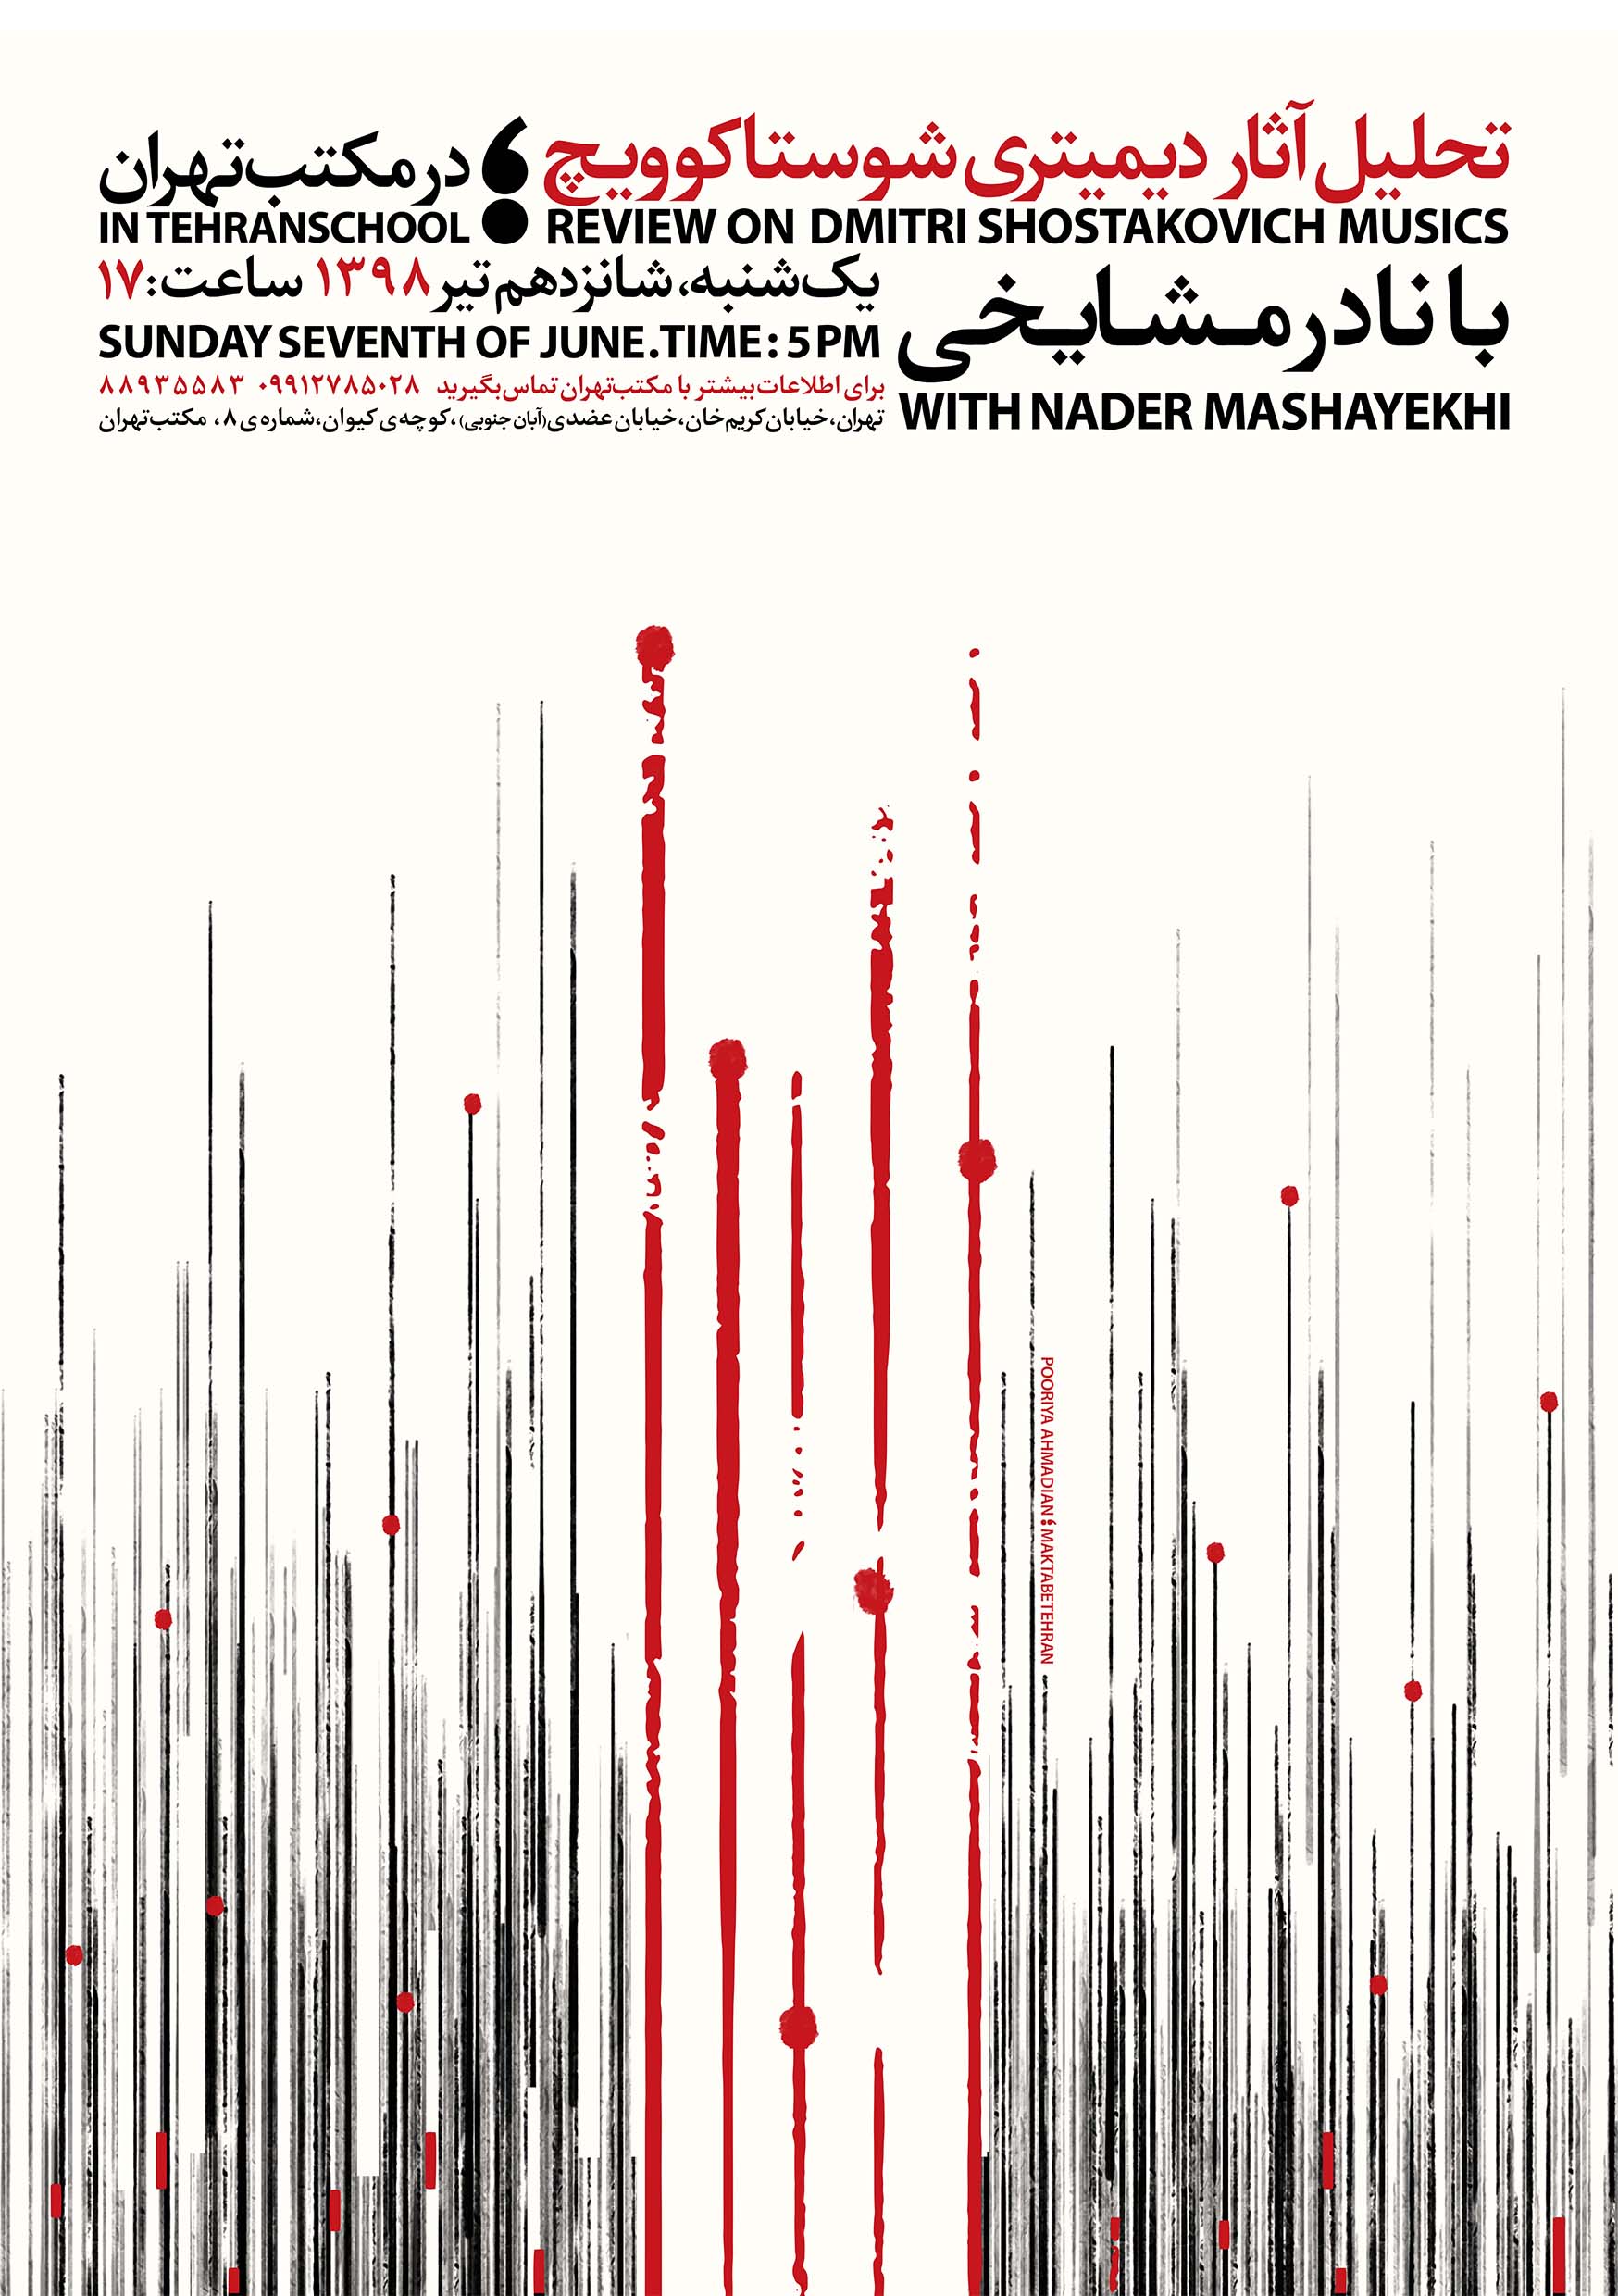 پوستر رویداد تحلیل آثار دیمیتری شوستاکویچ